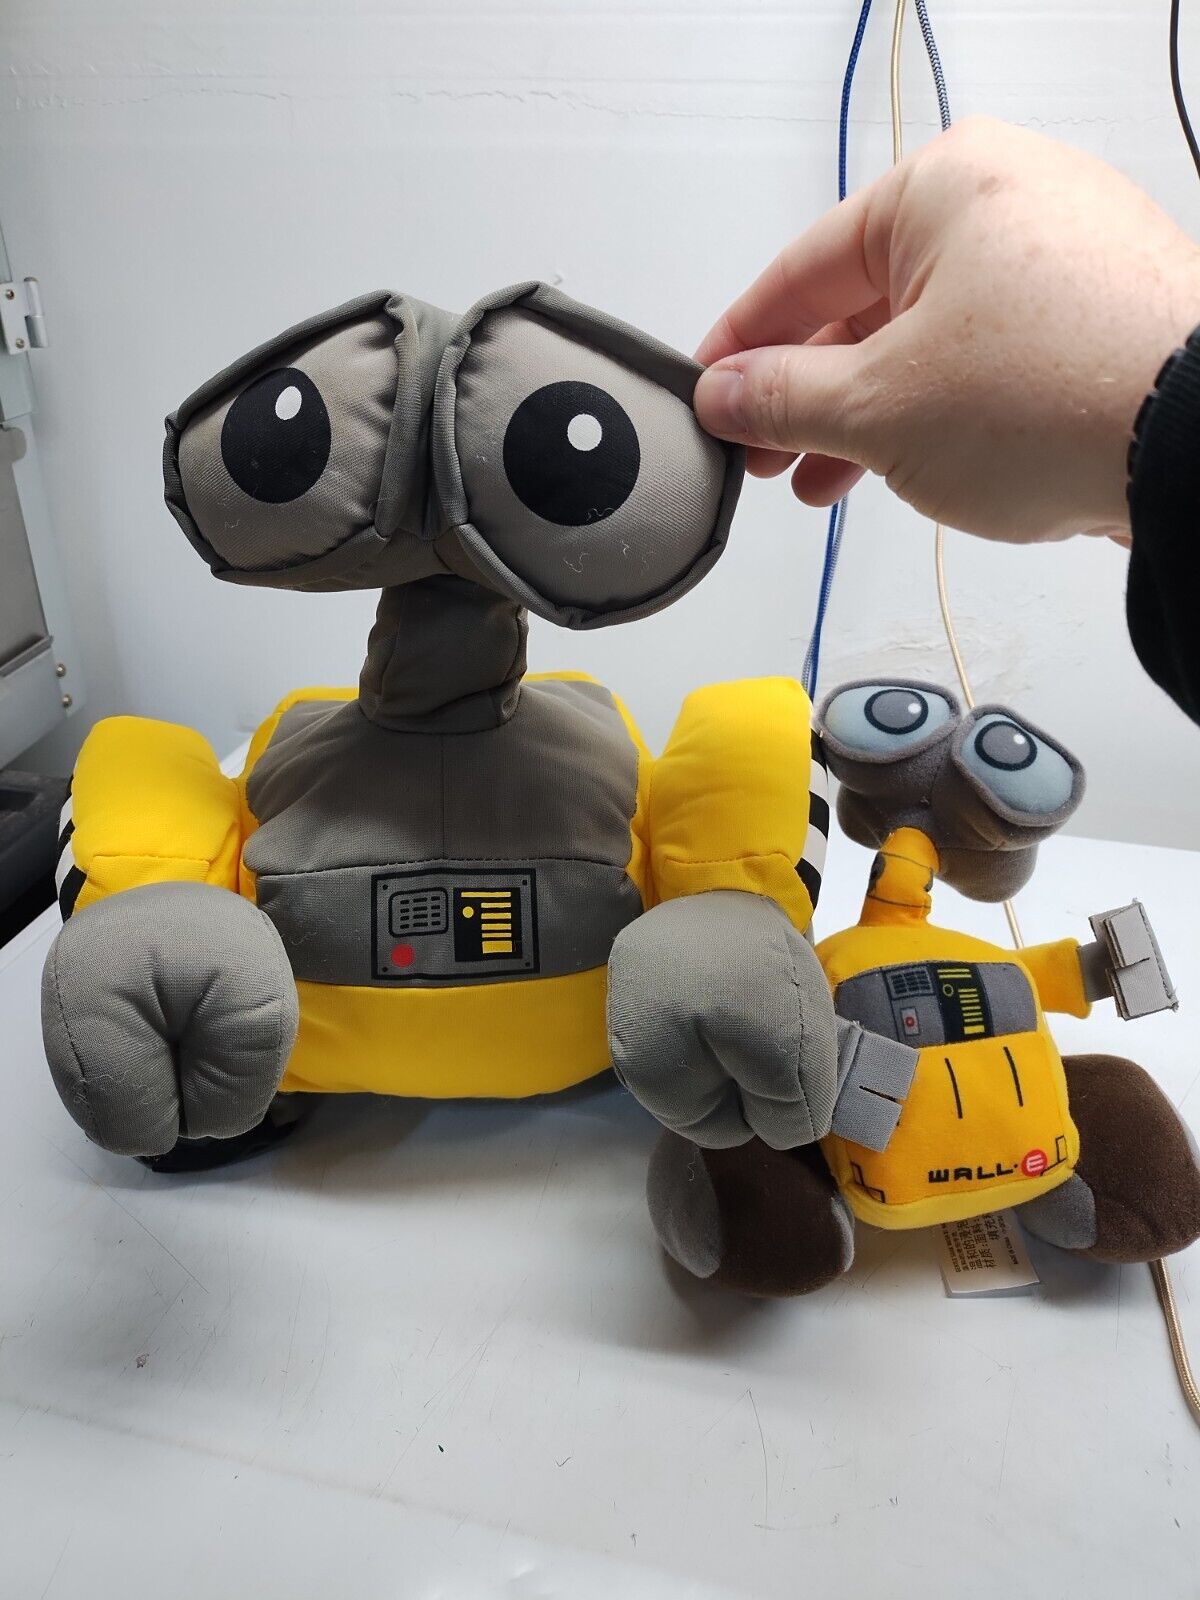 Authentic Disney Pixar Disney Store WALL-E Plush Robot Toy 14\